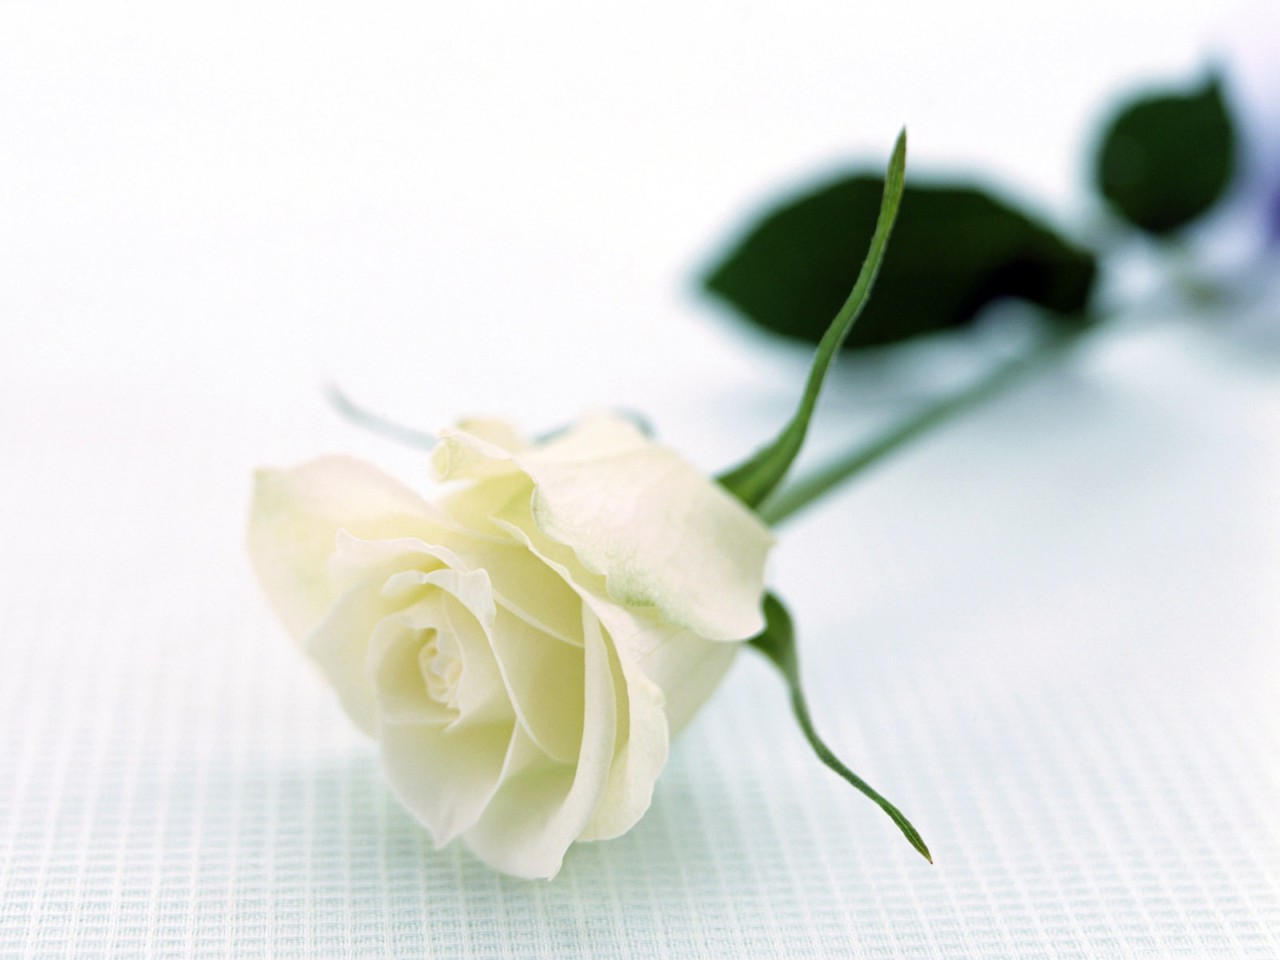 hồng trắng để biểu tượng cho sự lãng mạn và tình yêu trong sáng